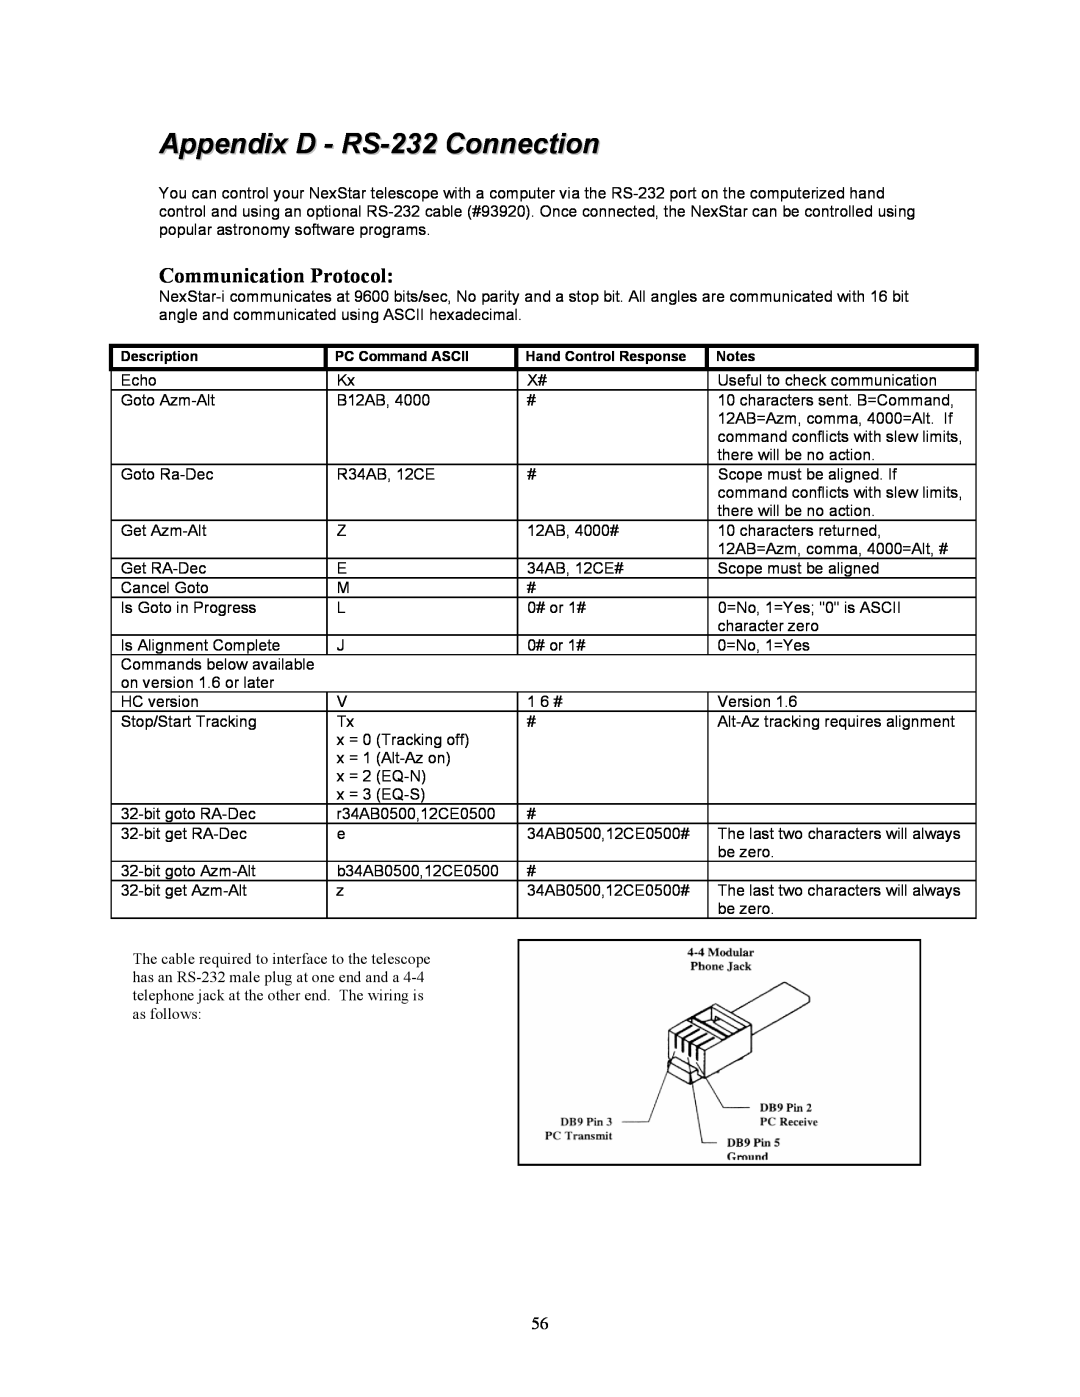 Celestron 8i manual Appendix D - RS-232 Connection, Communication Protocol 